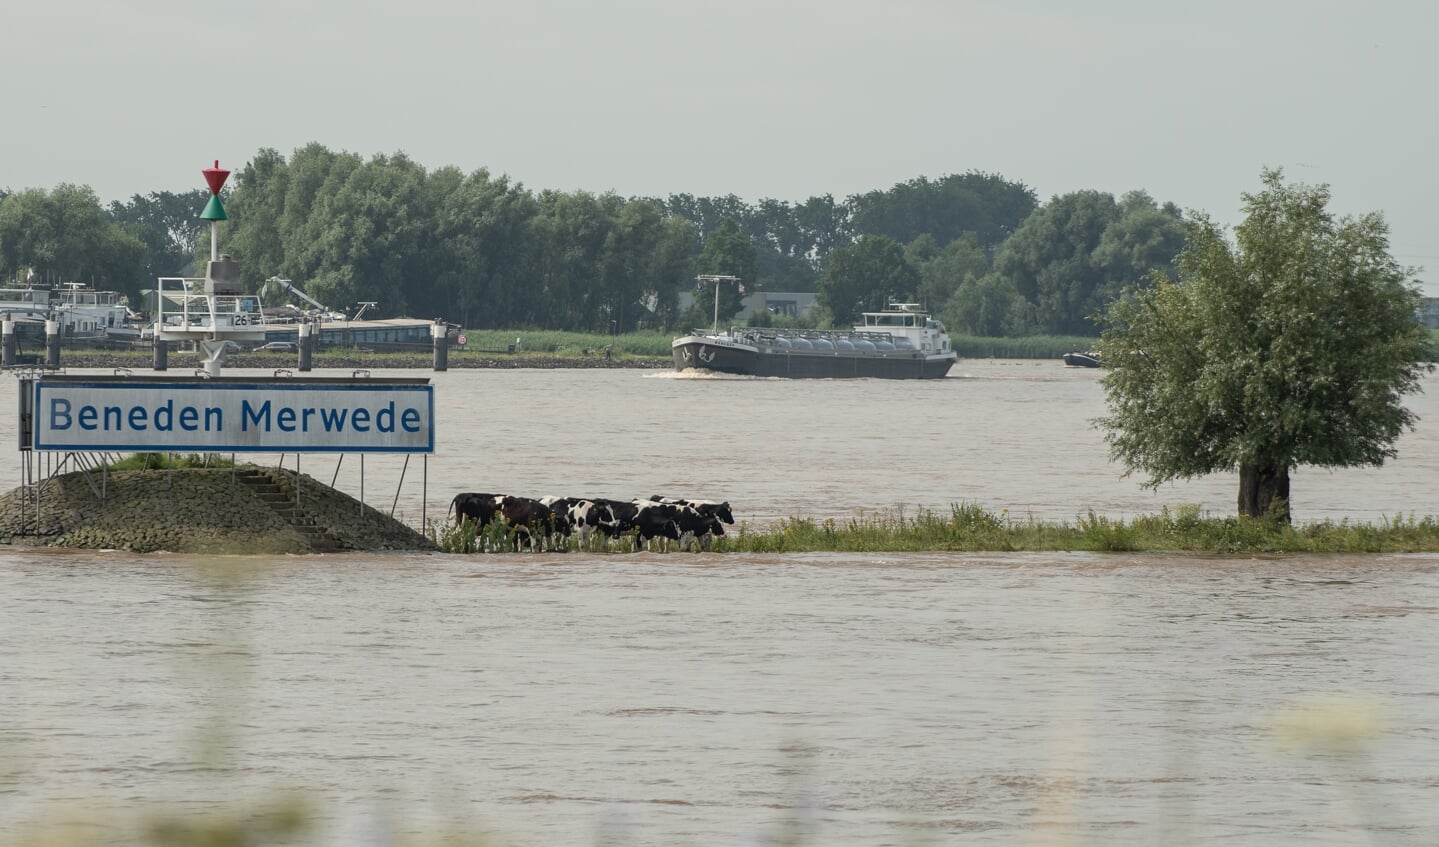 De koeien staan te wachten op de watertaxi, op de splitsing van de Nieuwe en de Beneden Merwede.